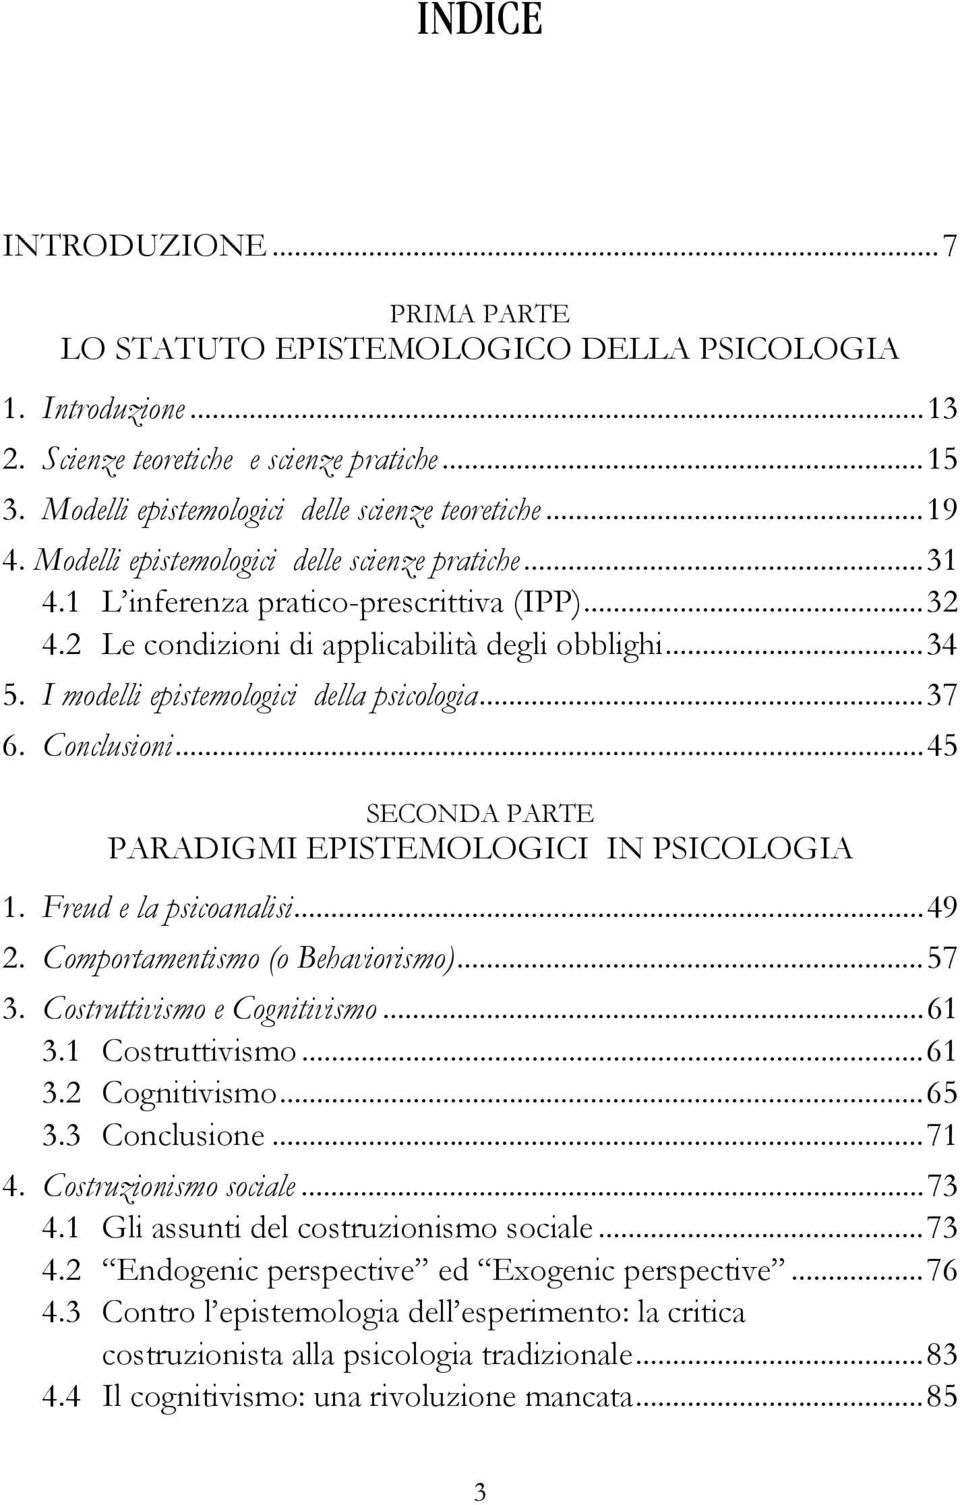 I modelli epistemologici della psicologia...37 6. Conclusioni...45 SECONDA PARTE PARADIGMI EPISTEMOLOGICI IN PSICOLOGIA 1. Freud e la psicoanalisi...49 2. Comportamentismo (o Behaviorismo)...57 3.